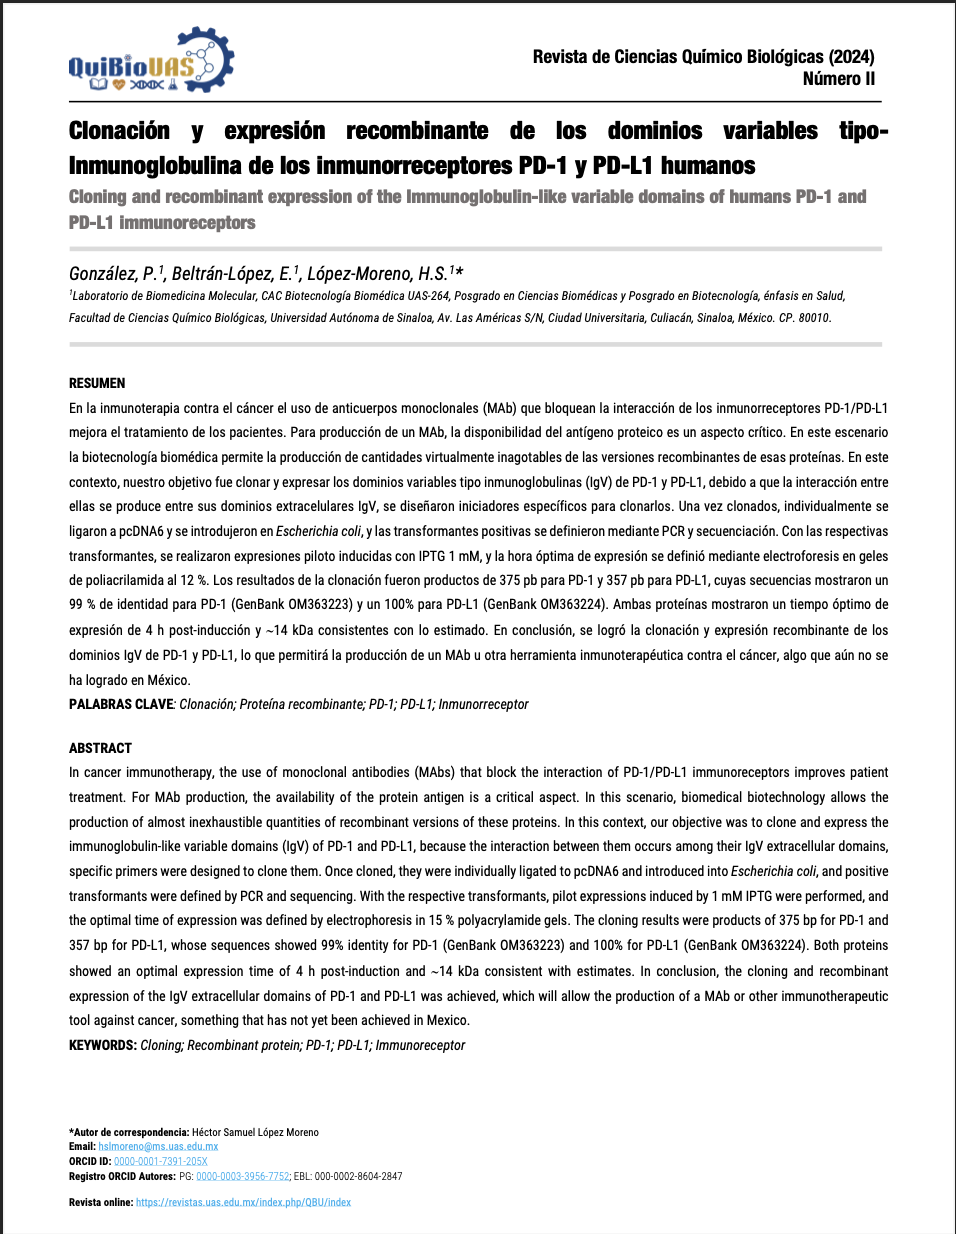 Clonación y expresión recombinante de los dominios variables tipoInmunoglobulina de los inmunorreceptores PD-1 y PD-L1 humanos